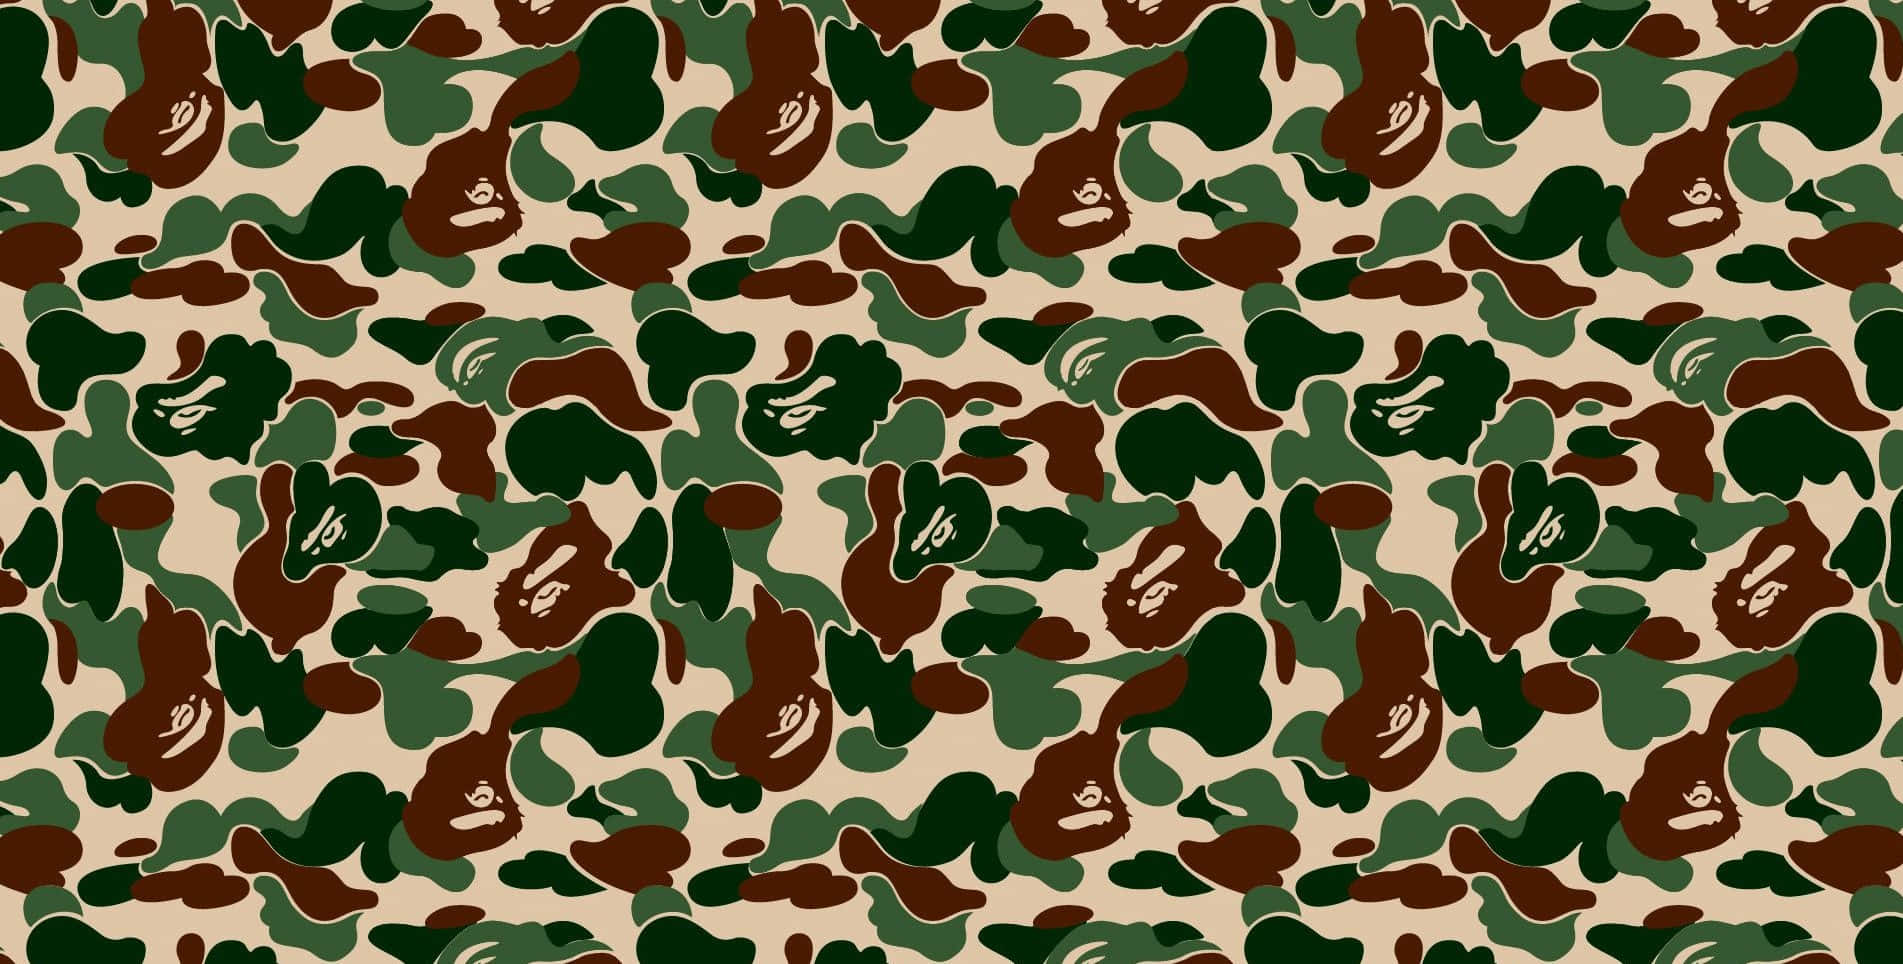 Etcamouflage-mønster Med Brune Og Grønne Farver.